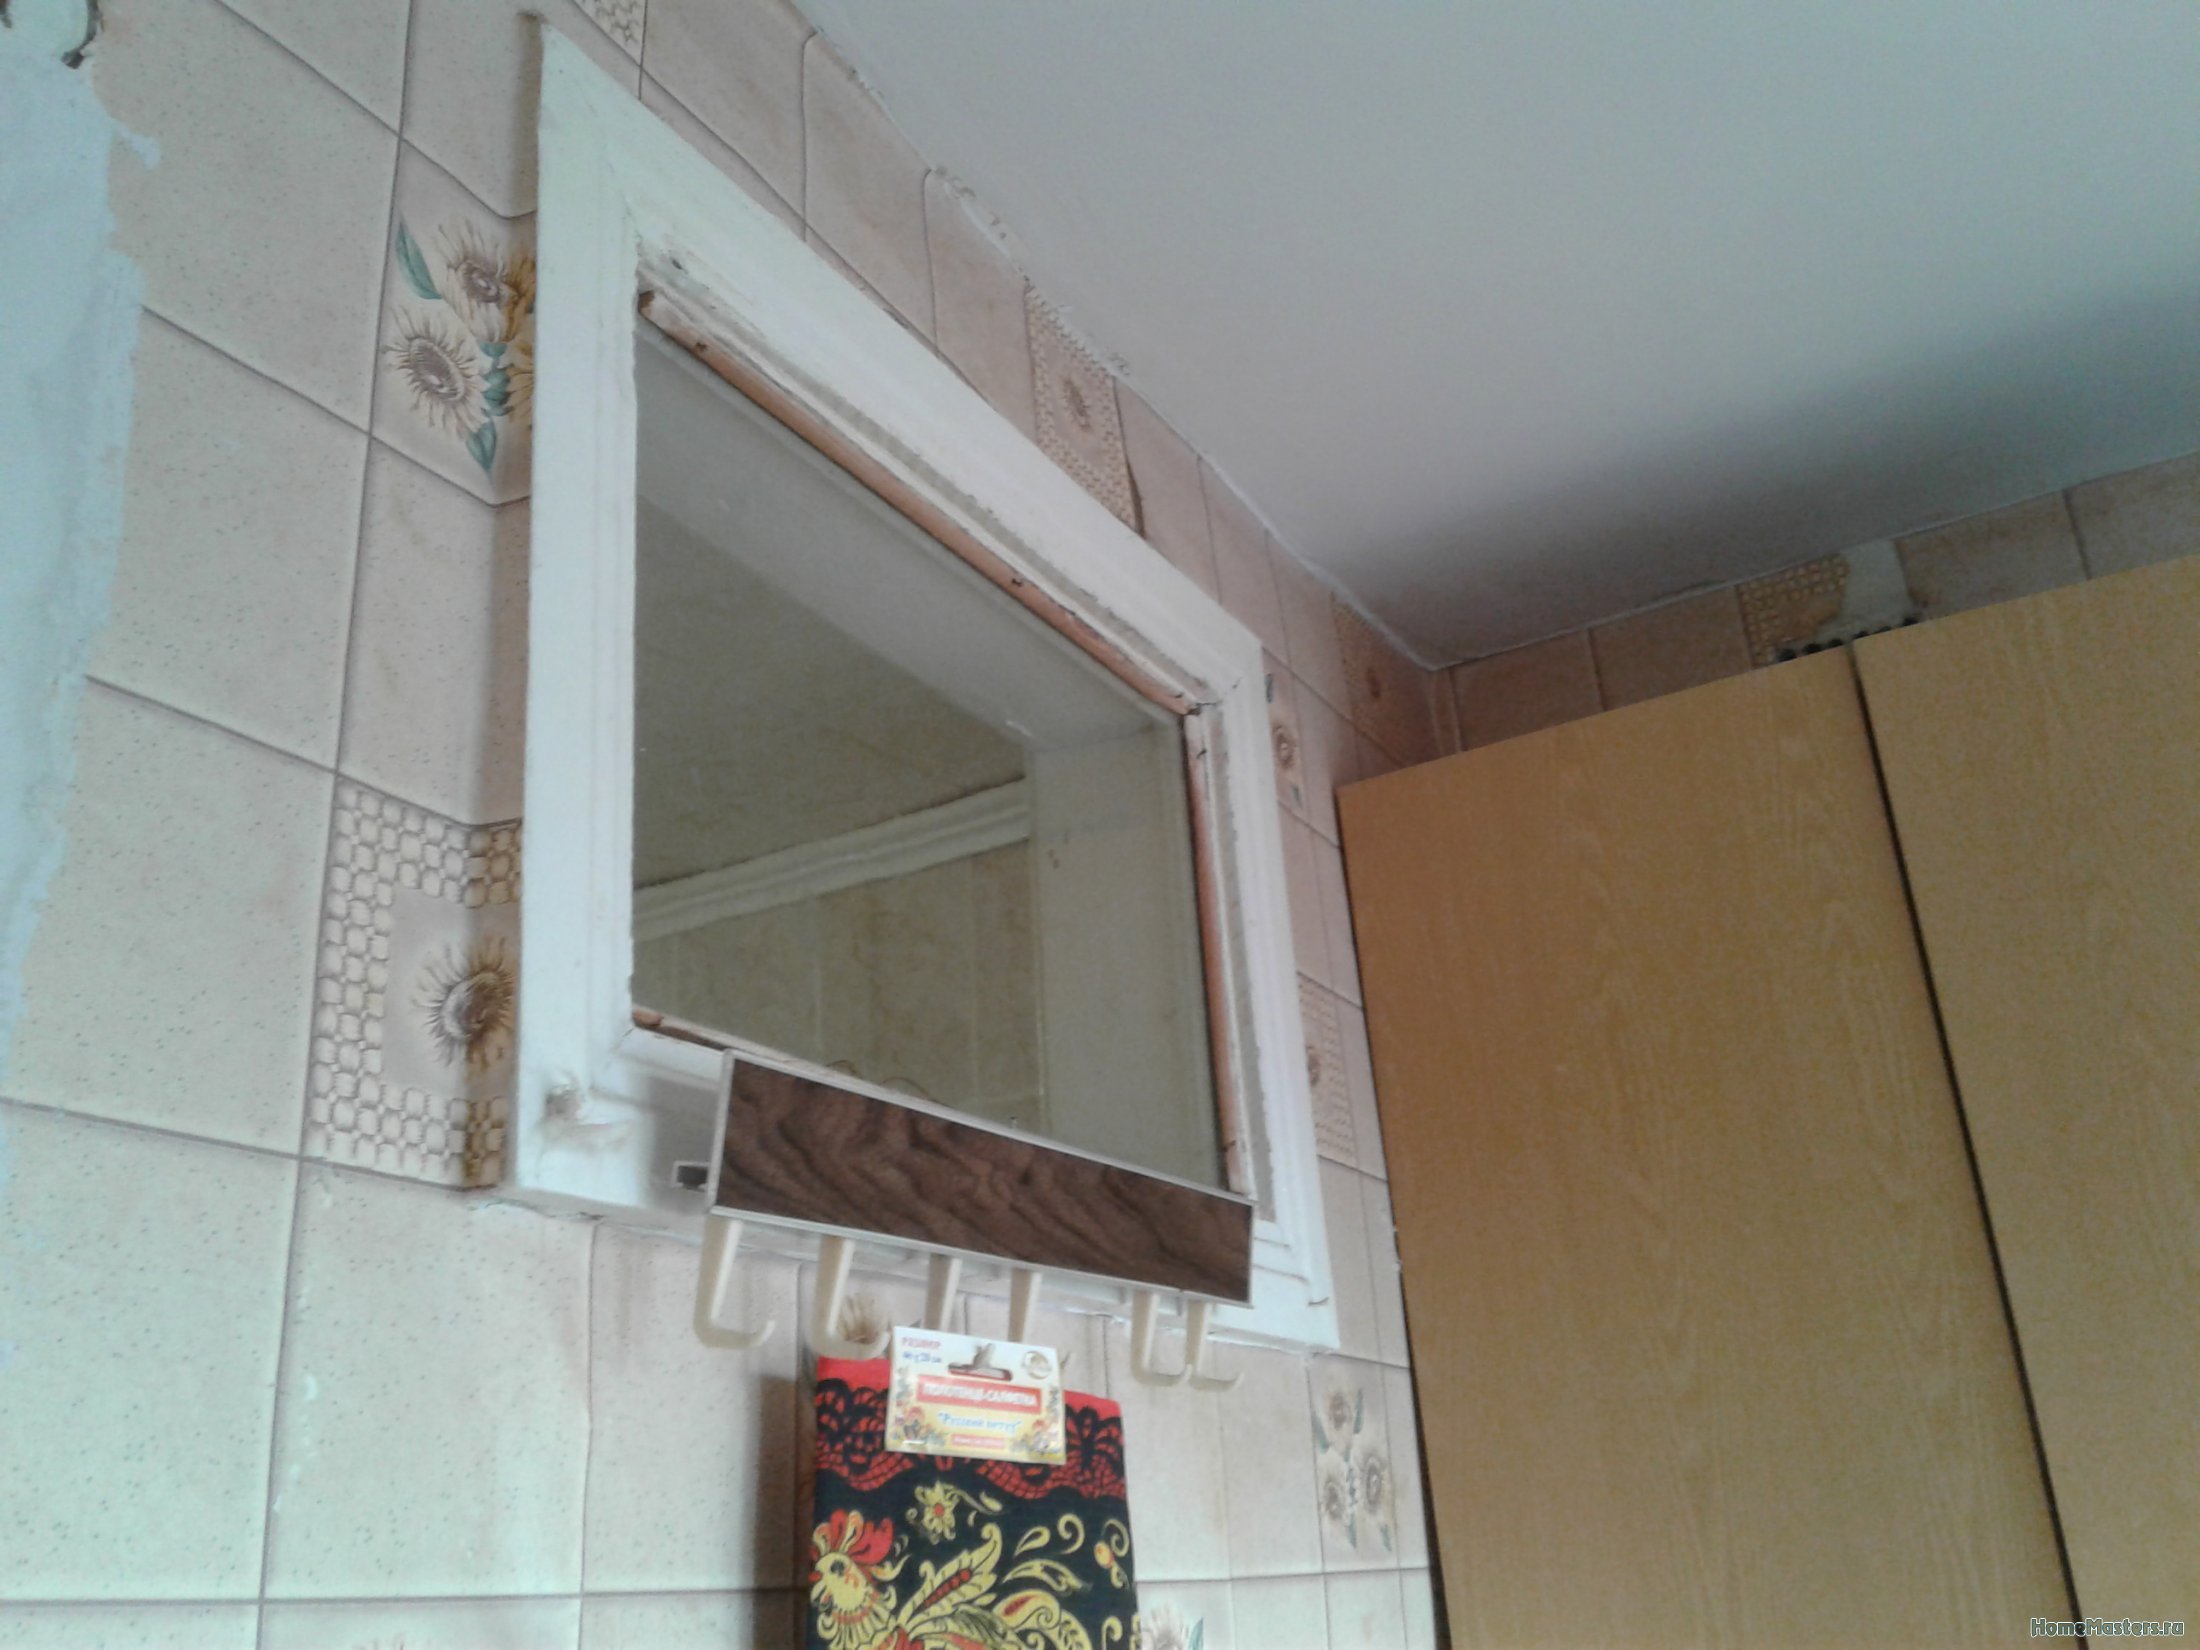 Зачем между ванной и кухней делали окно. Окно между ванной и кухней. Окно в ванной в хрущевке. Пластиковое окно между ванной и кухней. Окошко между ванной и кухней.